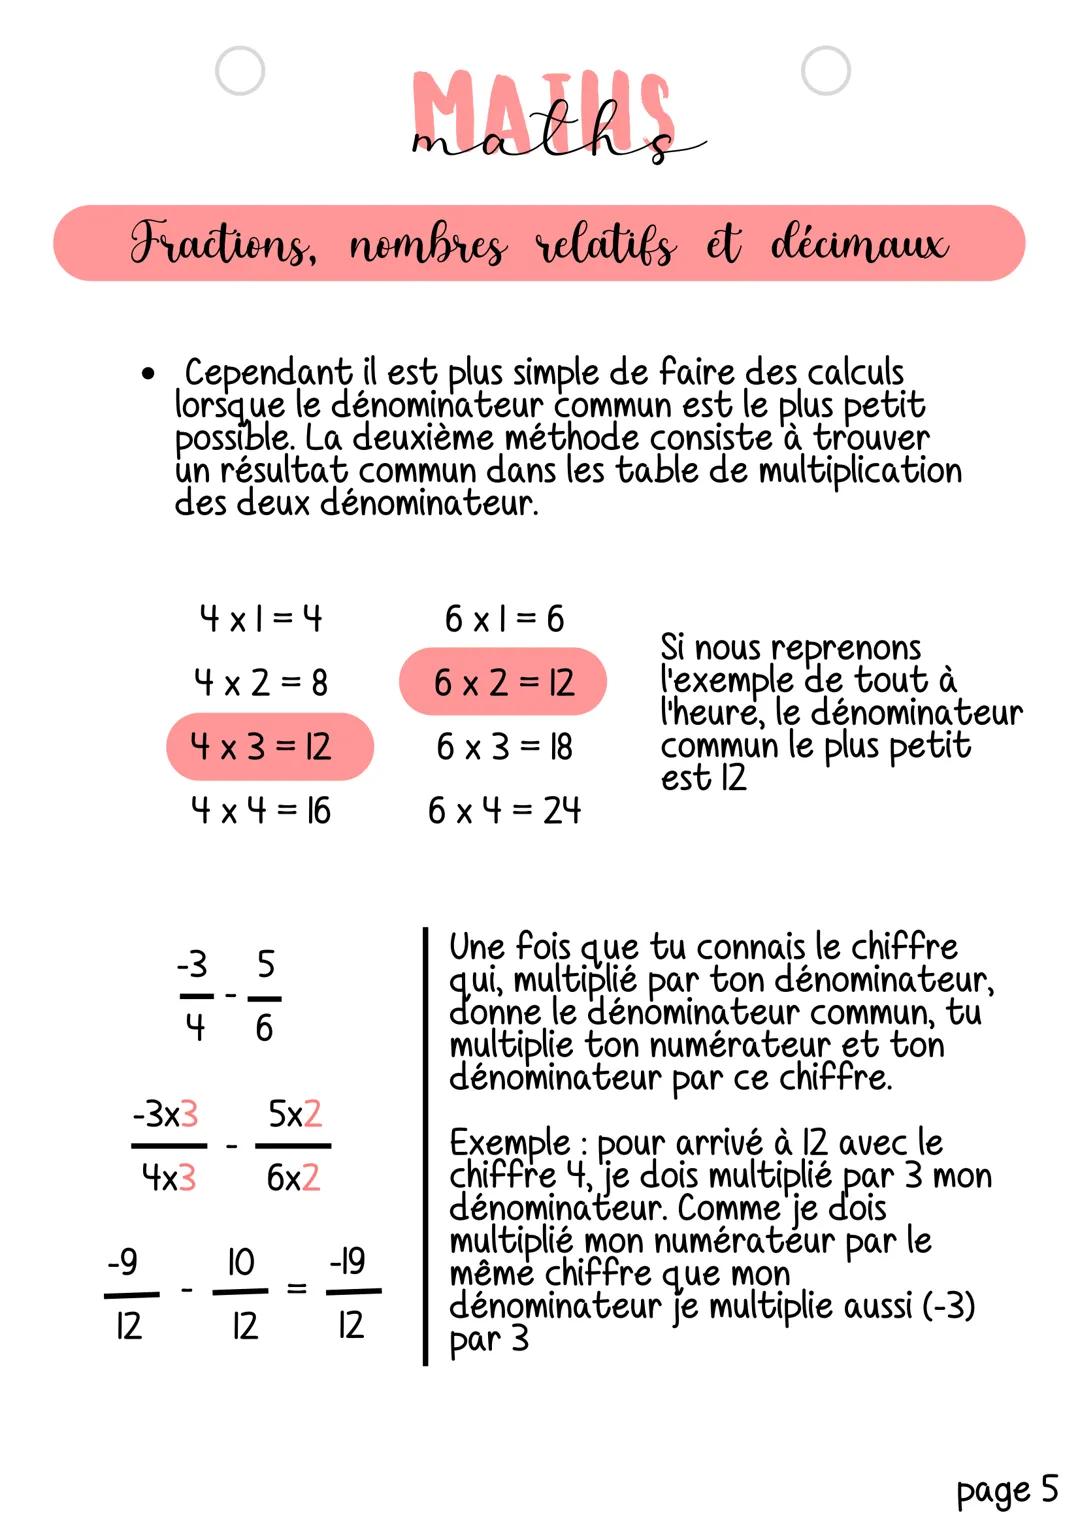 MAERS
Fractions, nombres relatifs et décimaux
Notion abordée: Pratiquer le calcul exact ou approché,
mental, à la main ou instrumenté.
Calcu